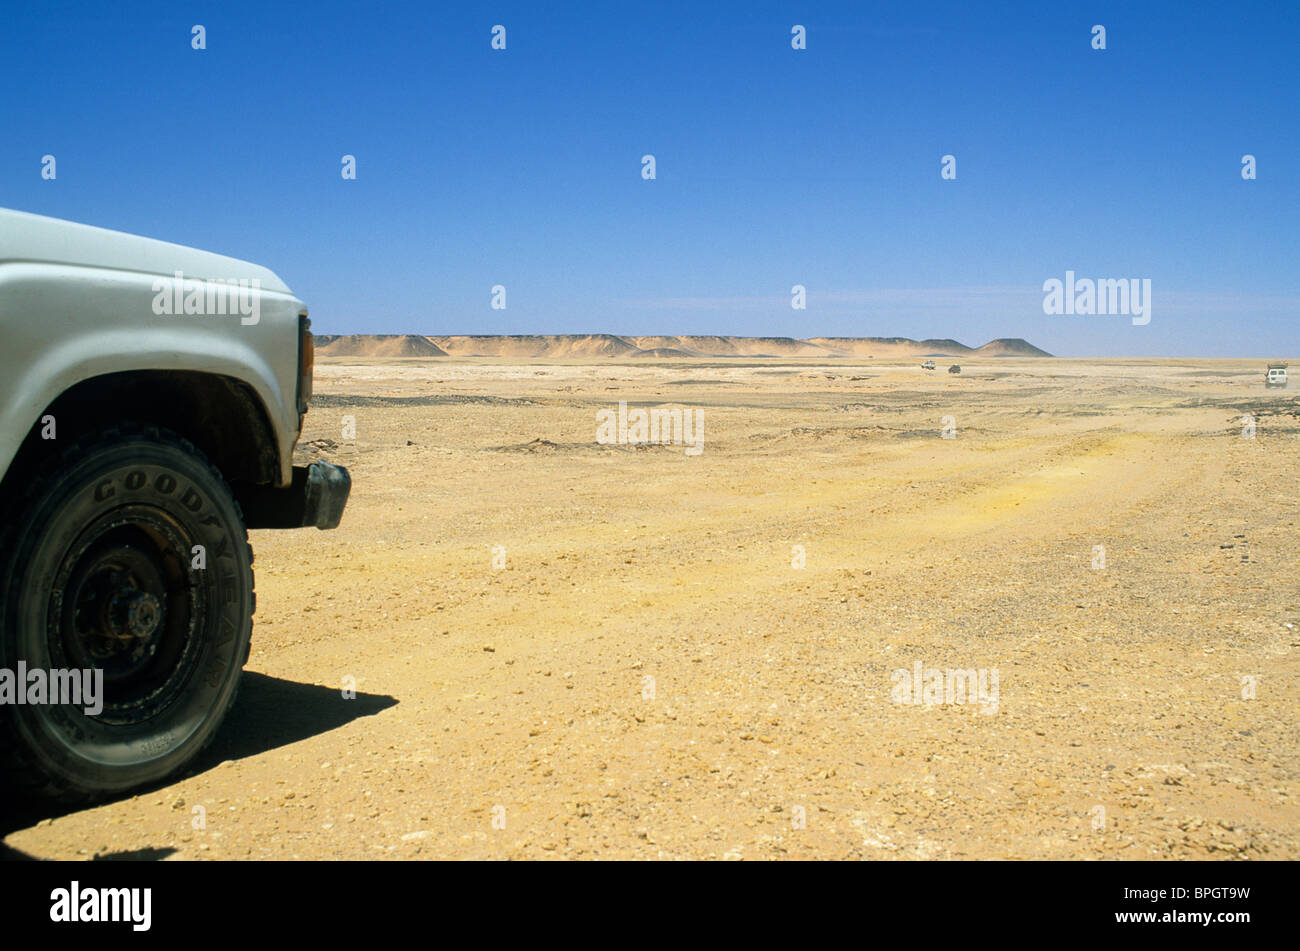 Avant d'un 4X4 (Toyota Landcruiser) passant une mauvaise piste, ca. 150 km à l'ouest de Waw un cratère Namus, Libye Banque D'Images